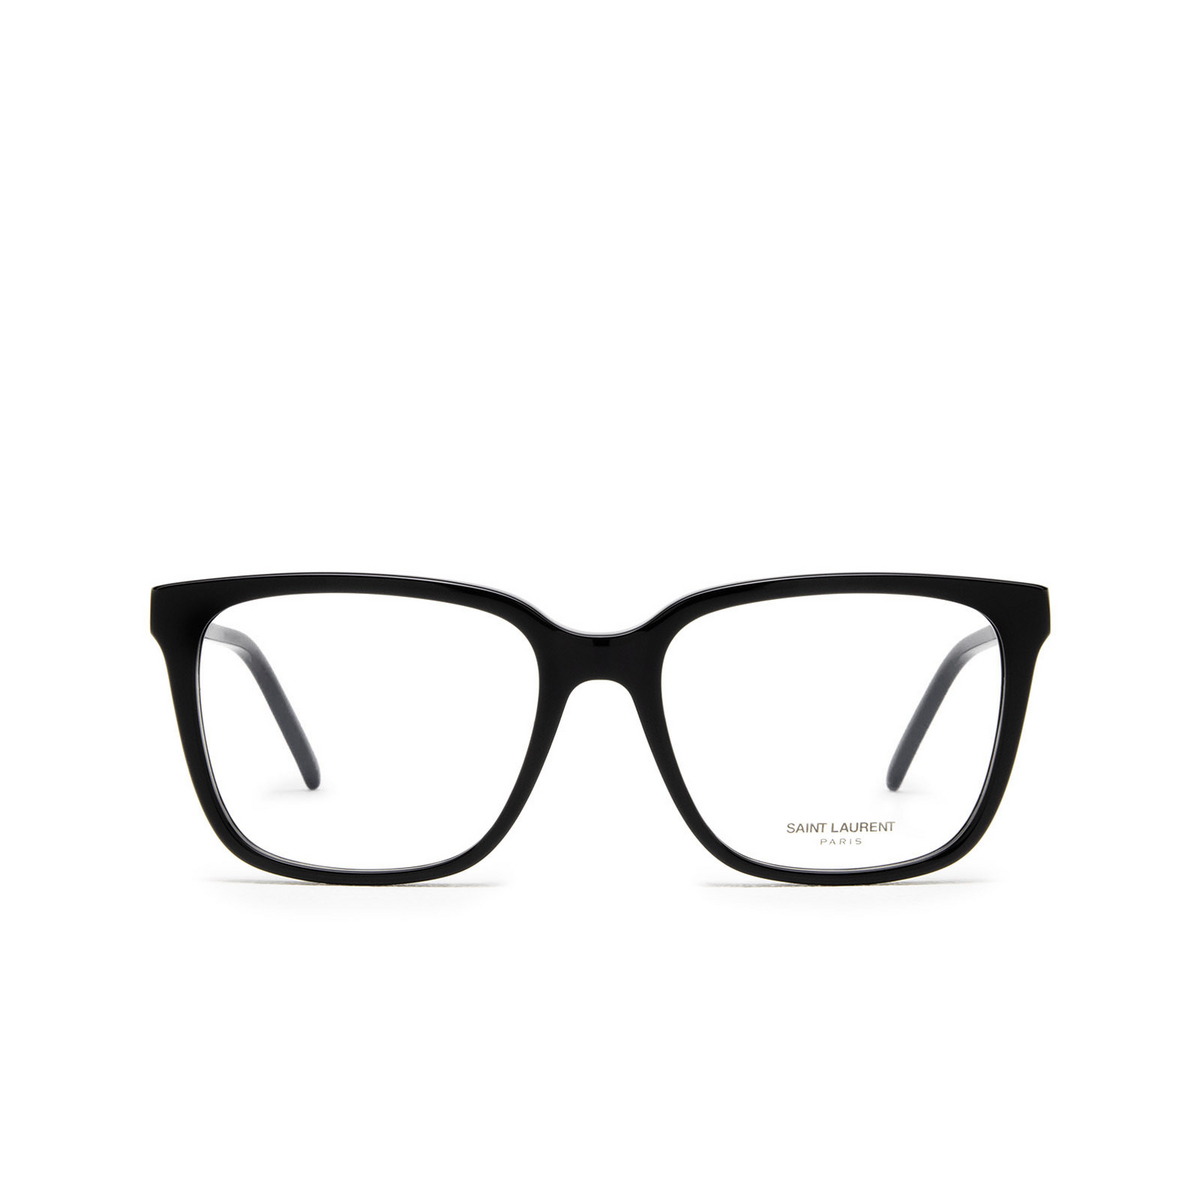 Saint Laurent® Square Eyeglasses: SL M102 OPT color 001 Black - front view